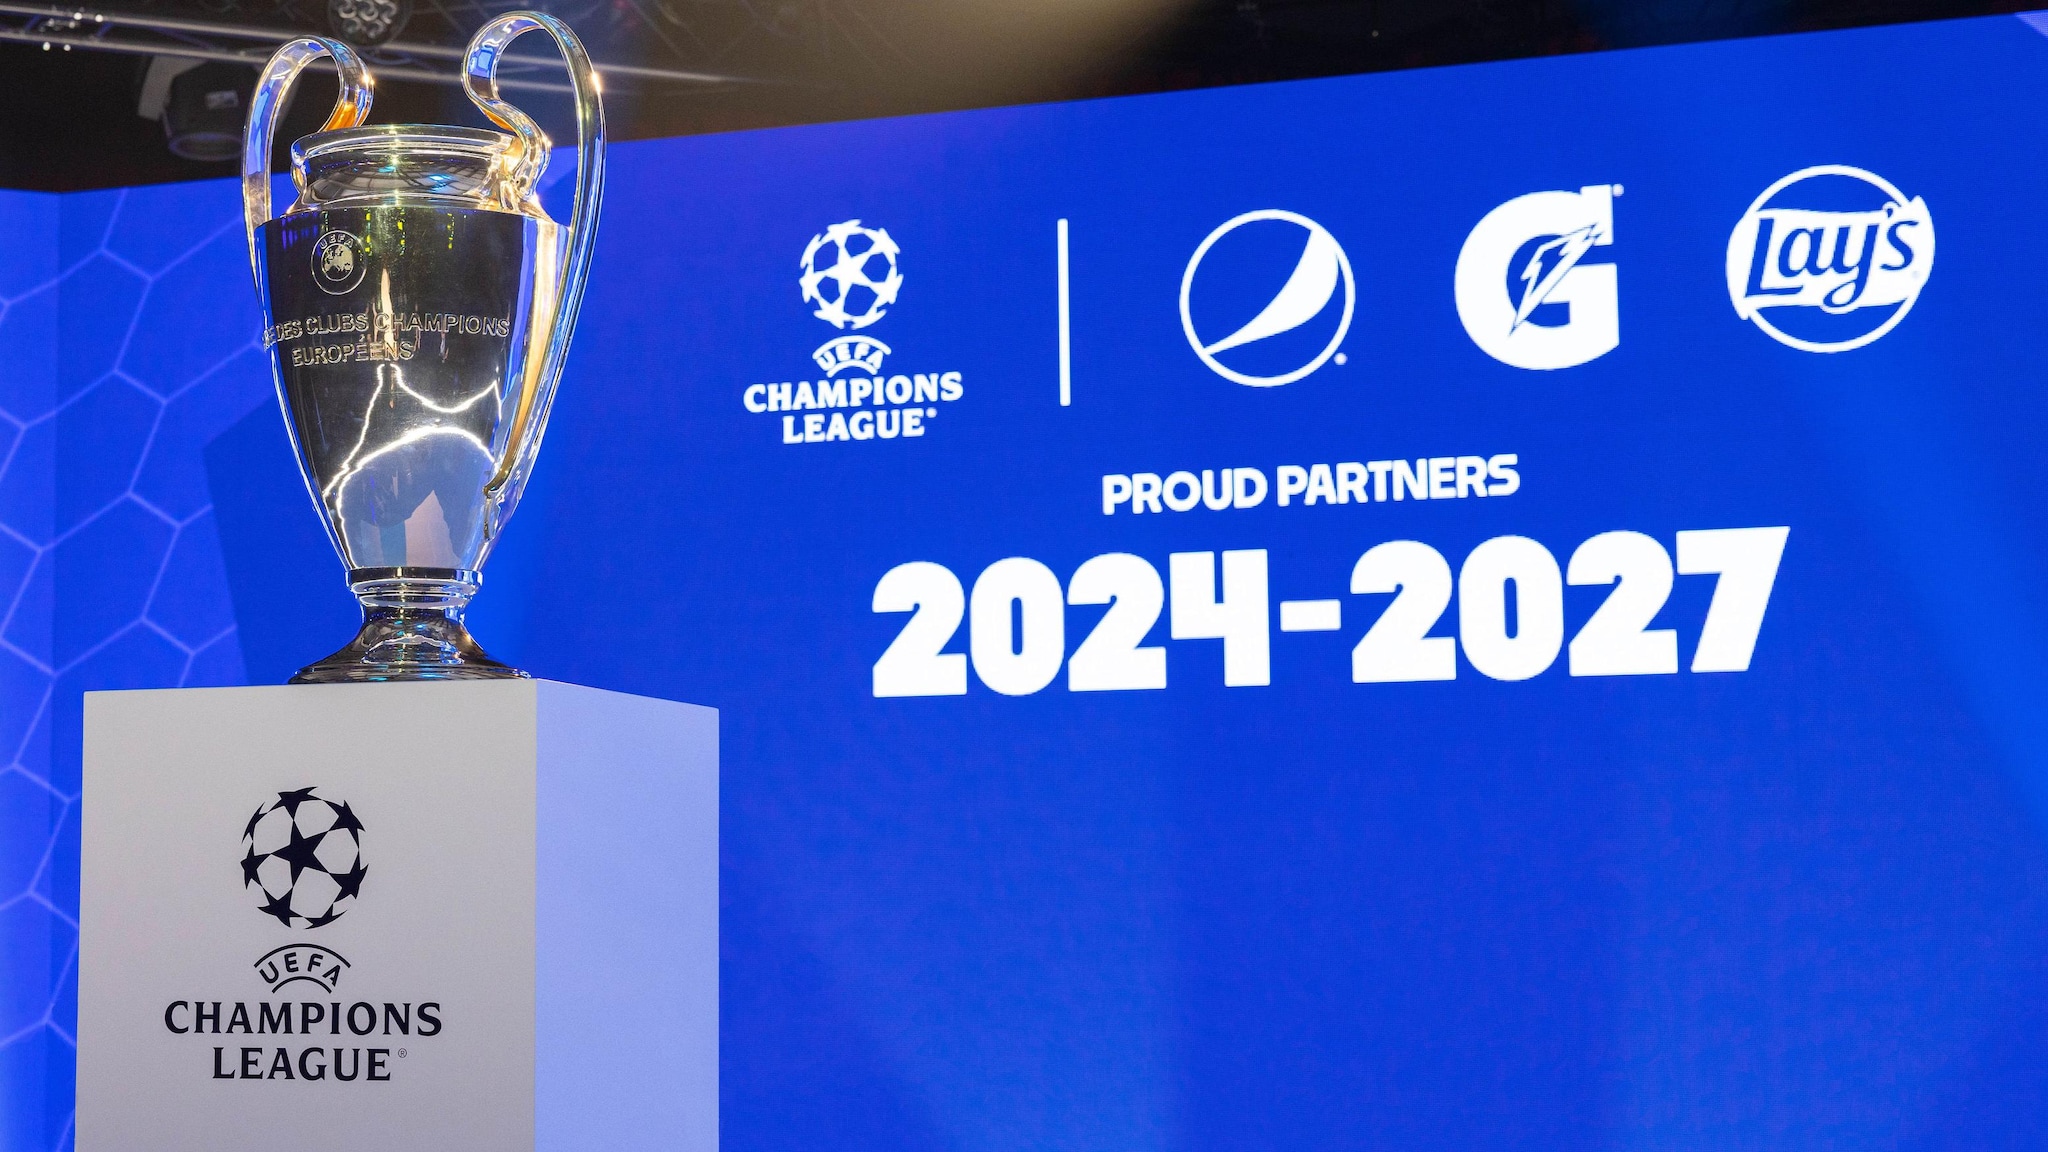 PepsiCo renueva su asociación con la UEFA Champions League para el